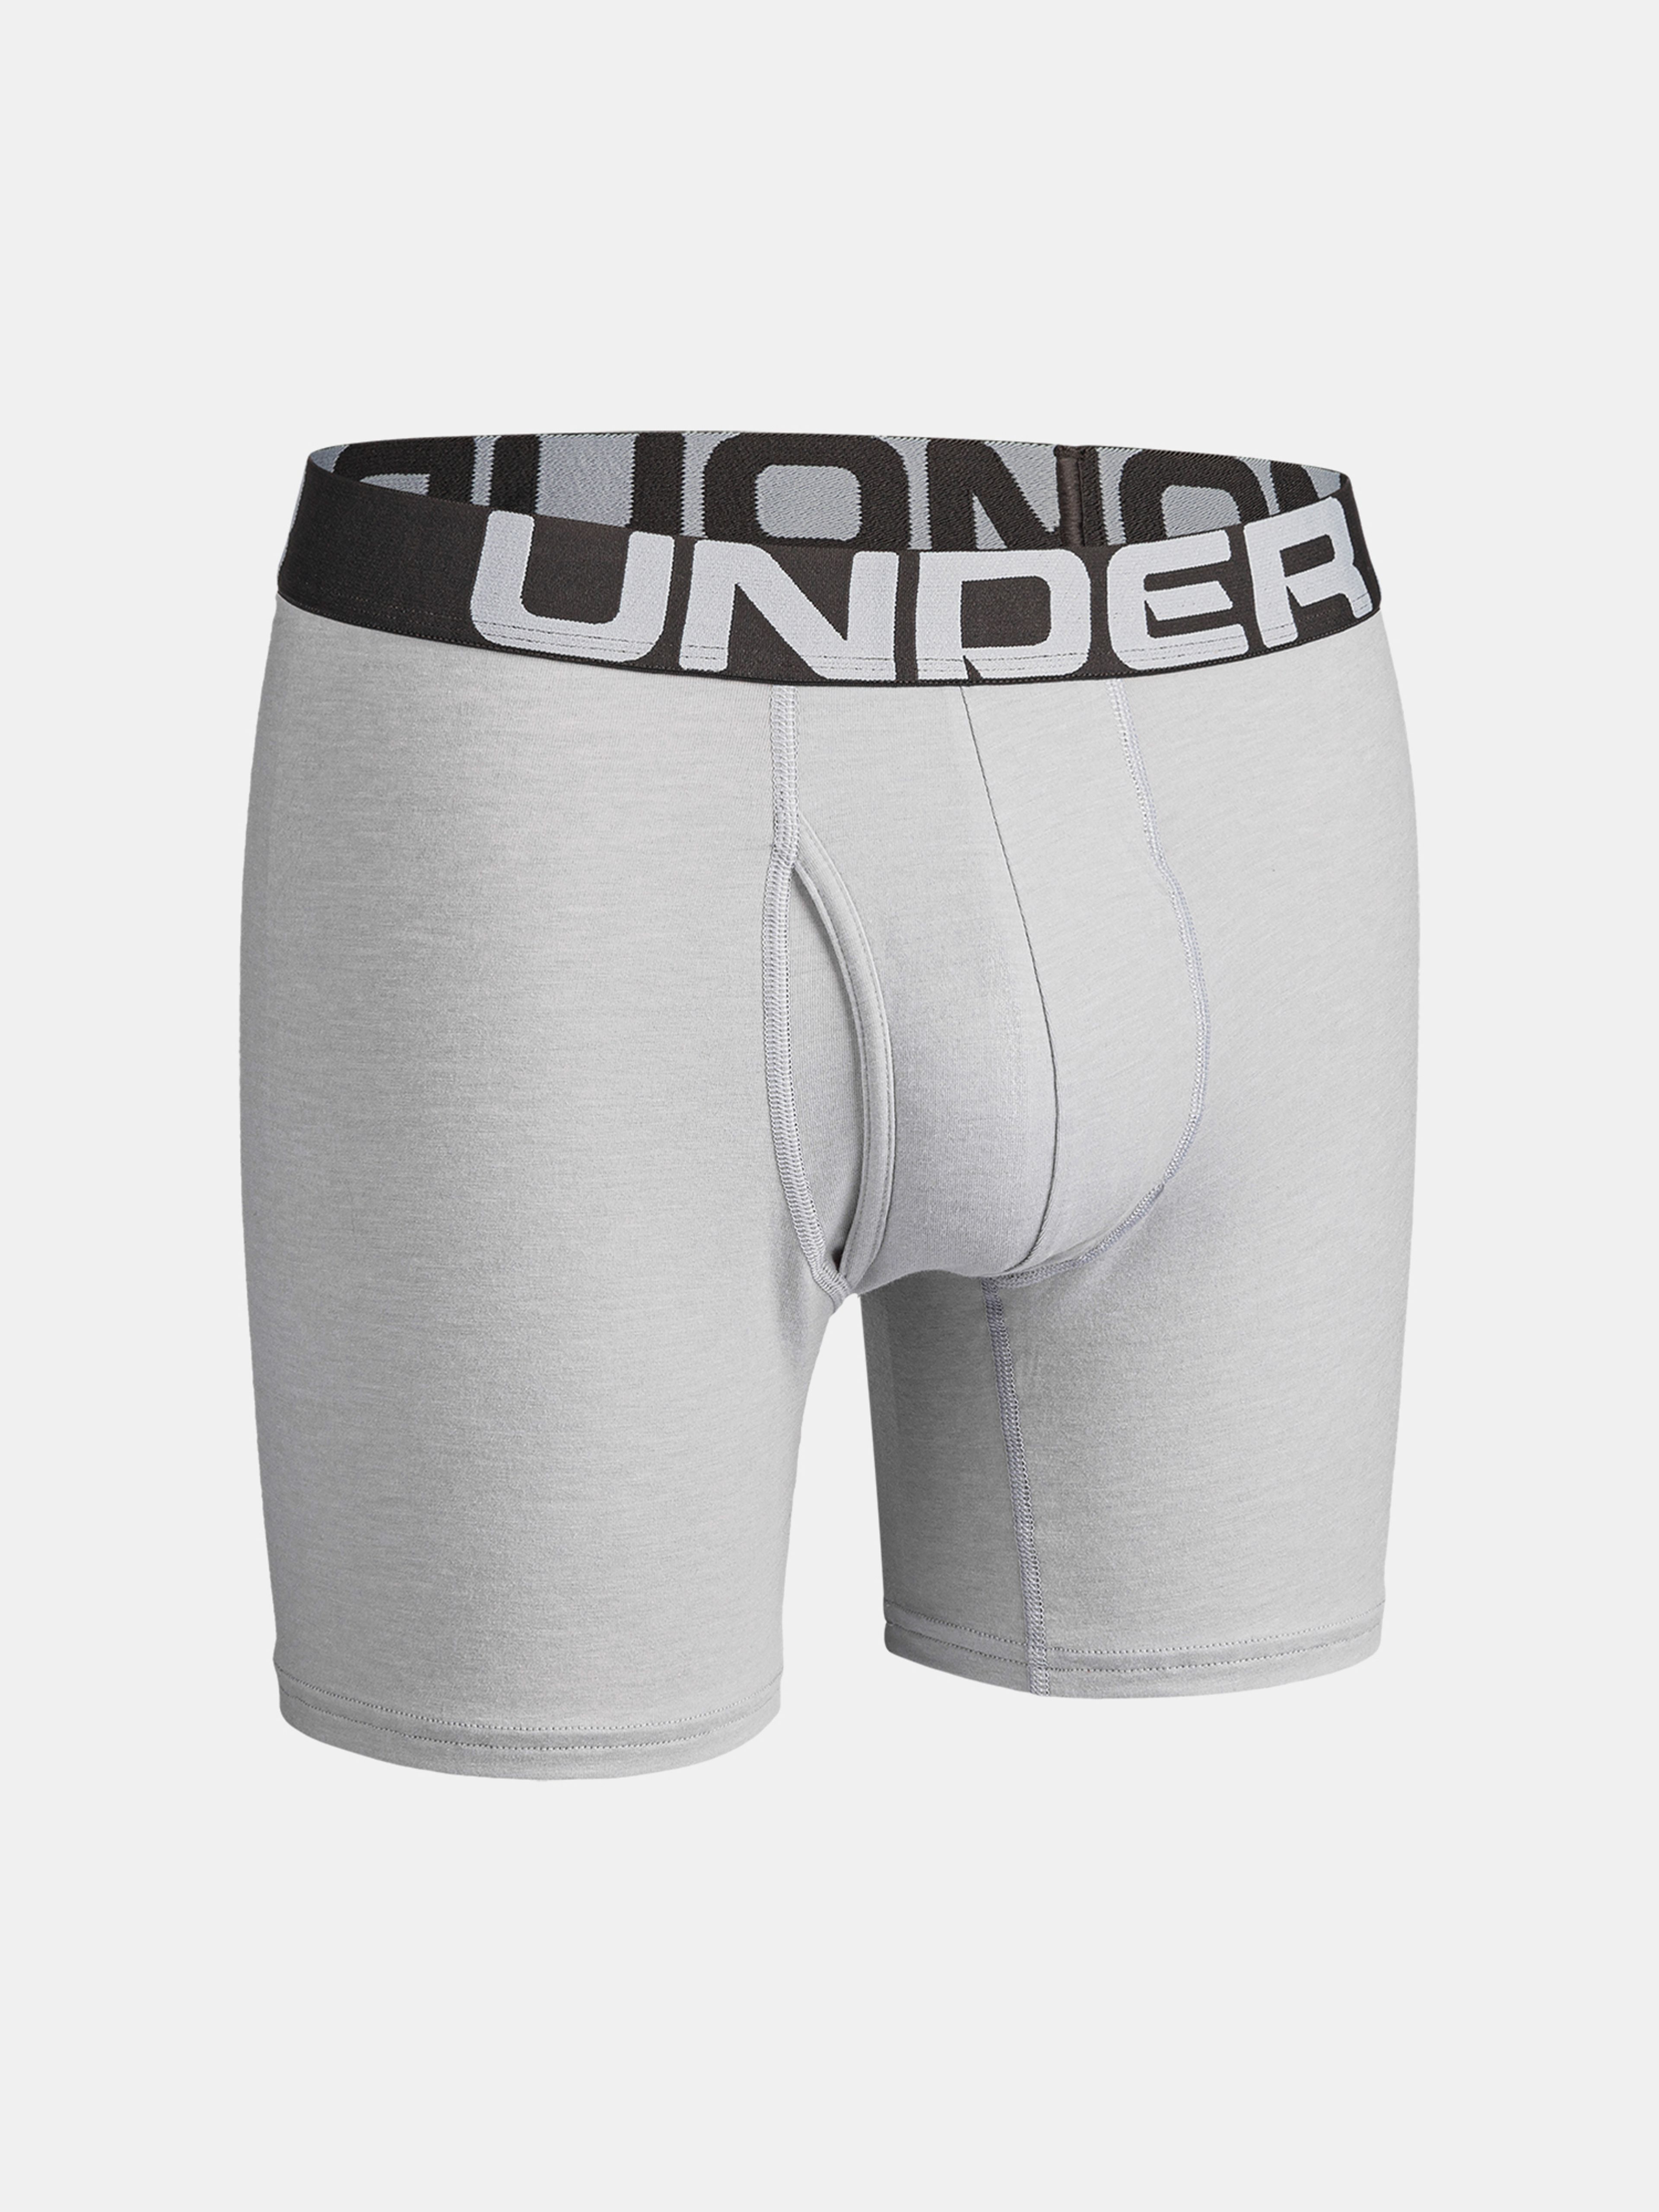  UA Charged Cotton 6in 3 Pack, White - men's underwear - UNDER  ARMOUR - 30.51 € - outdoorové oblečení a vybavení shop